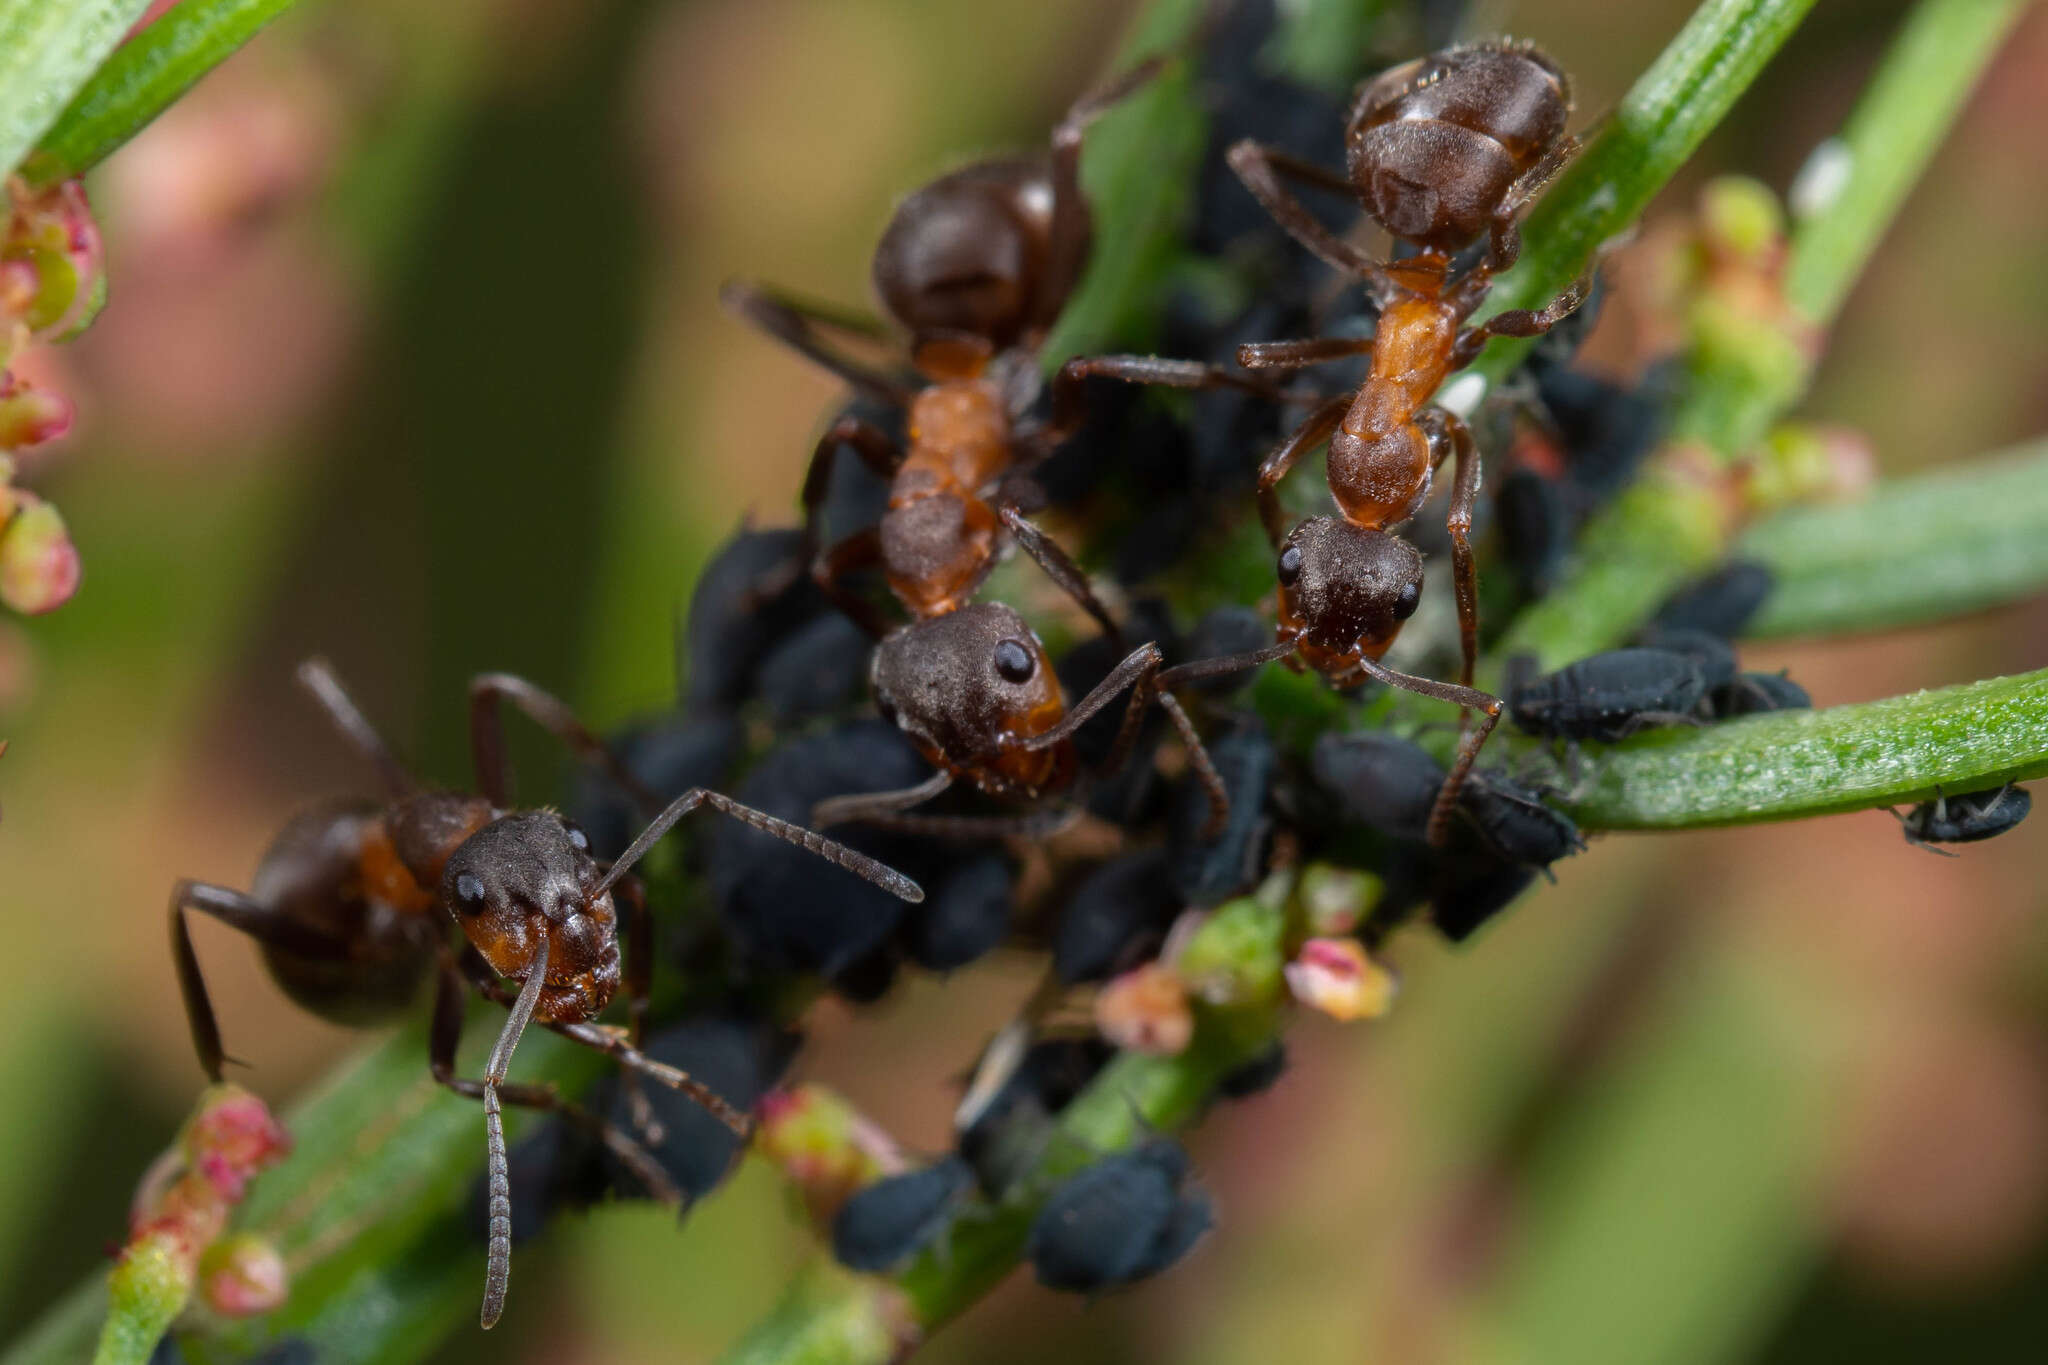 Image of Scottish wood ant